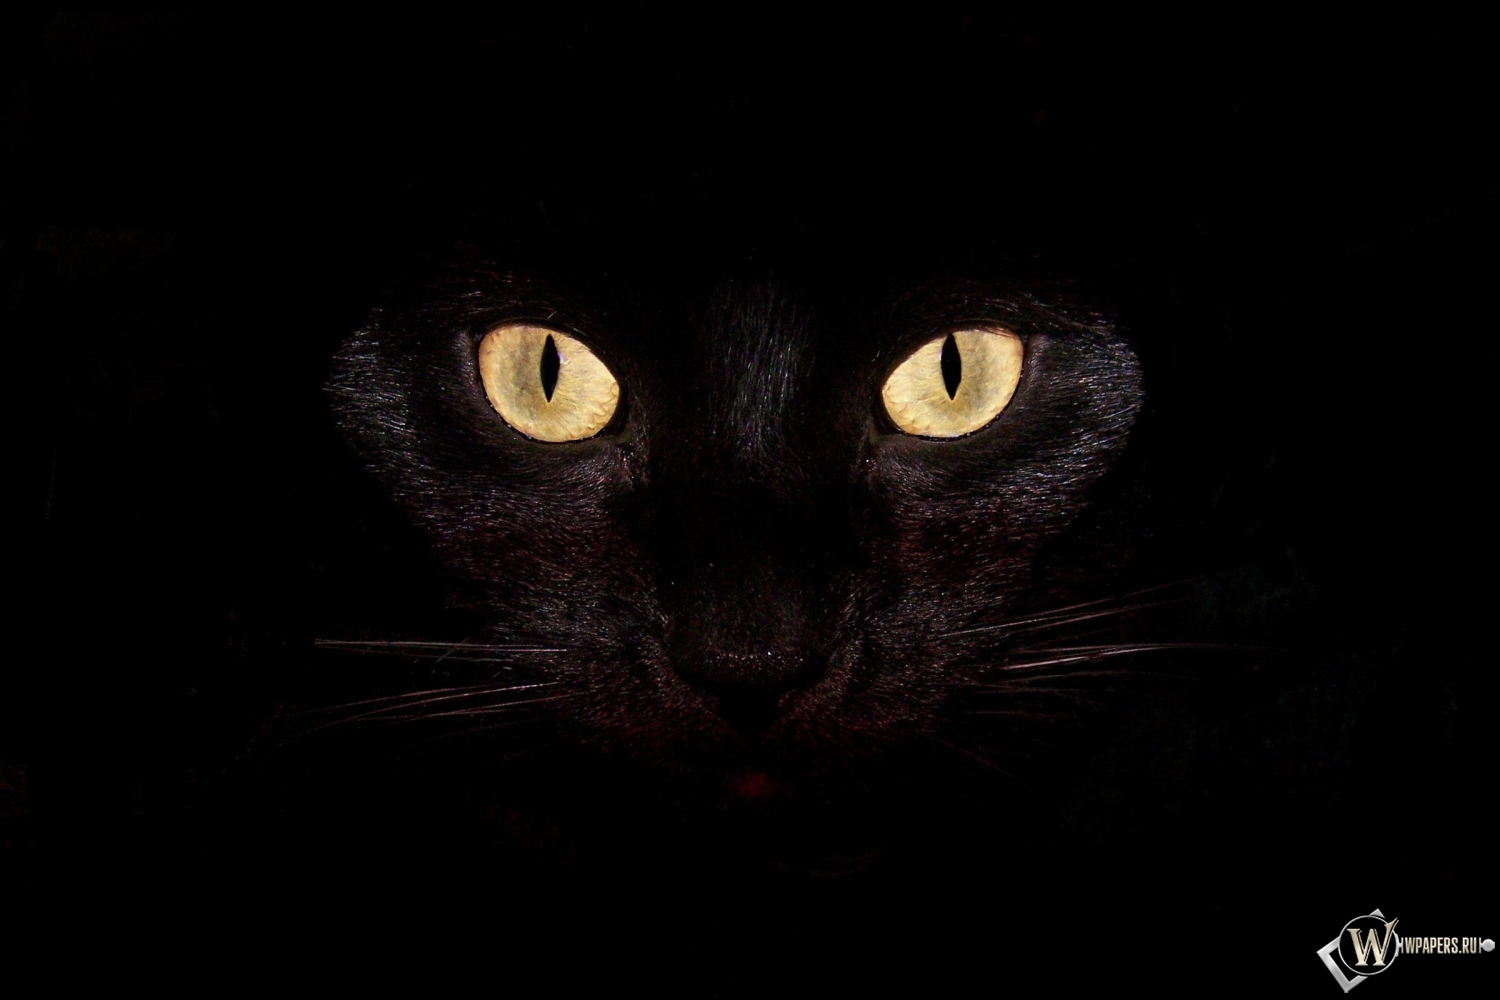 Черная кошка на чернофм фоне 1500x1000